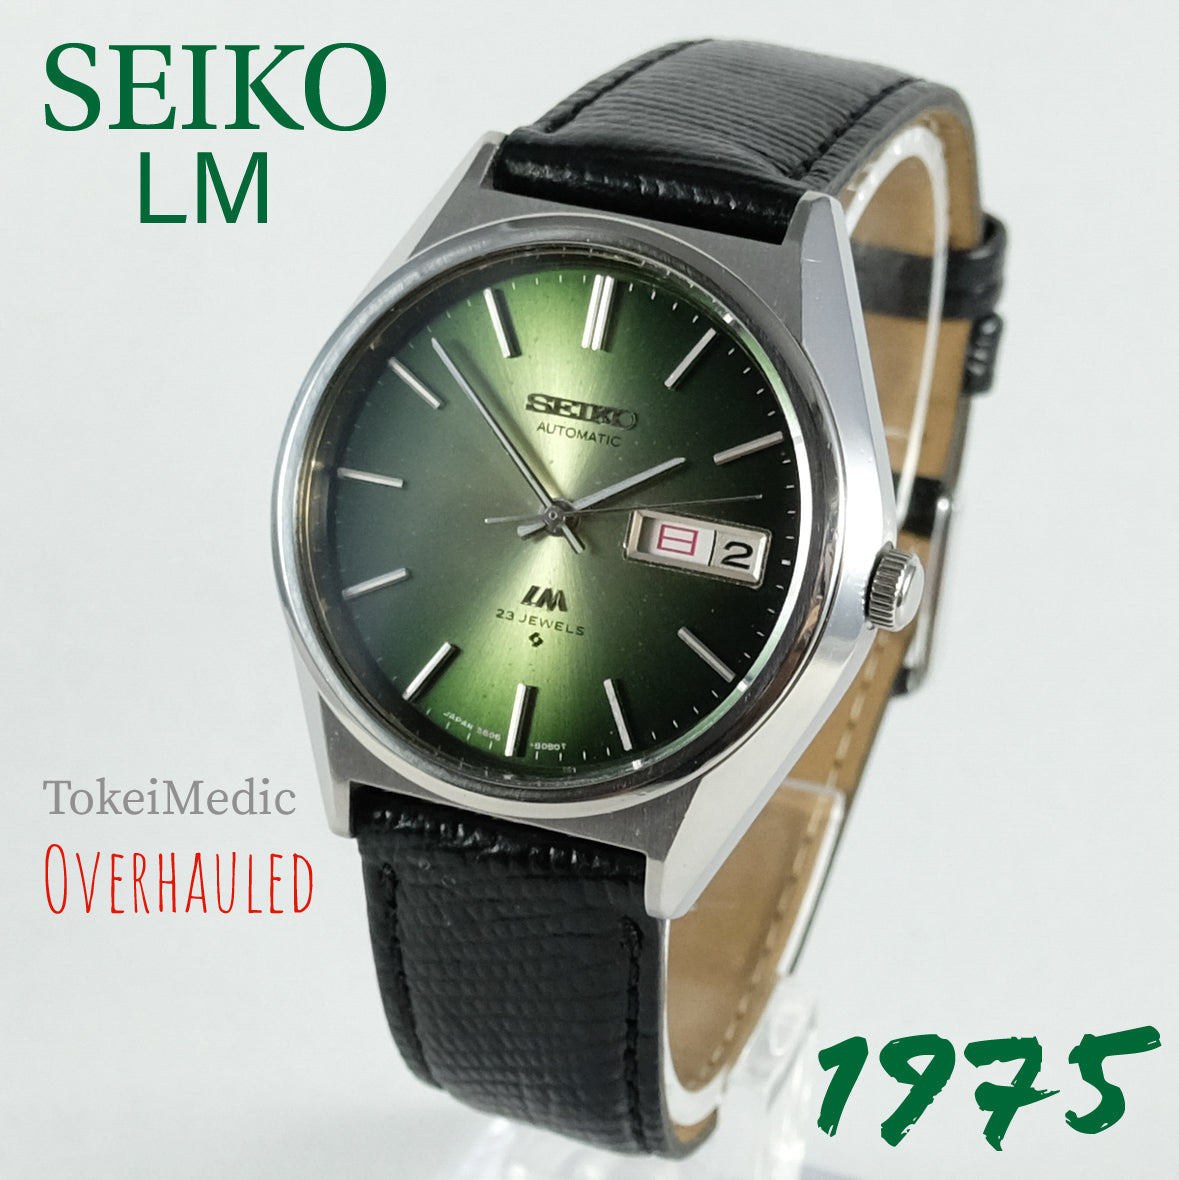 1975 Seiko LM 5606-8130